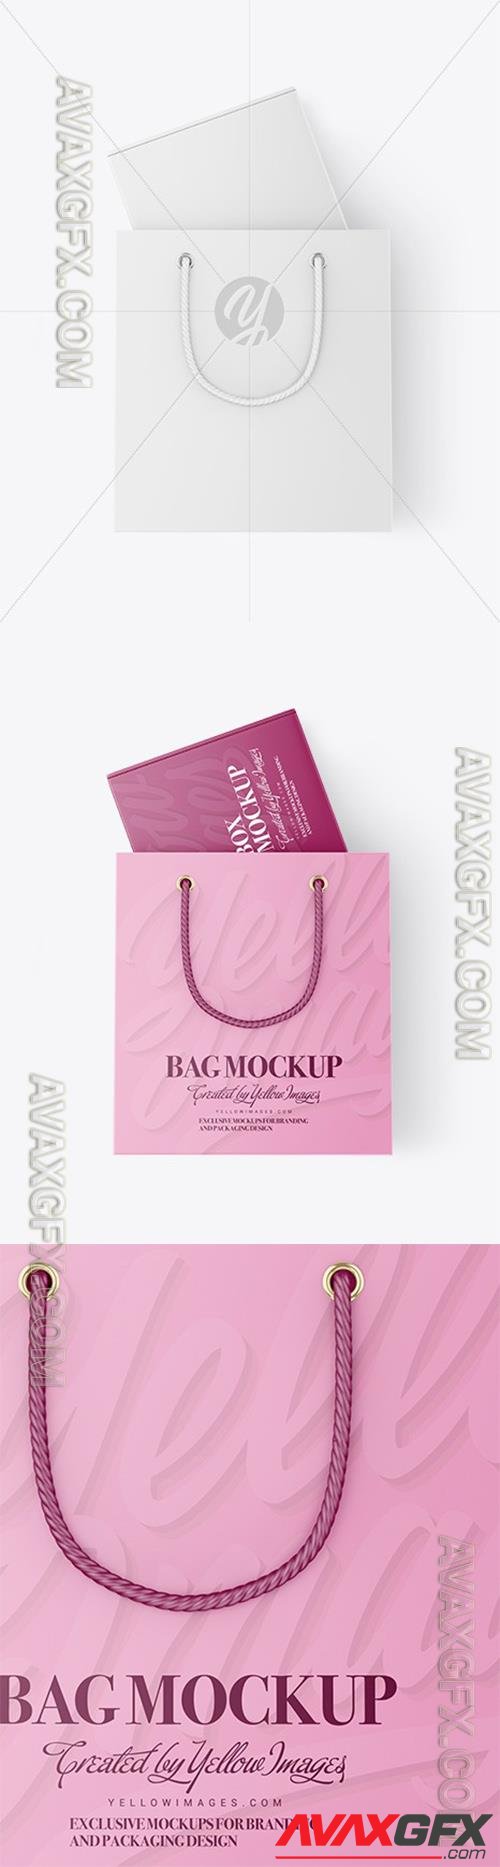 Paper Shopping Bag With Box Mockup 96704 TIF